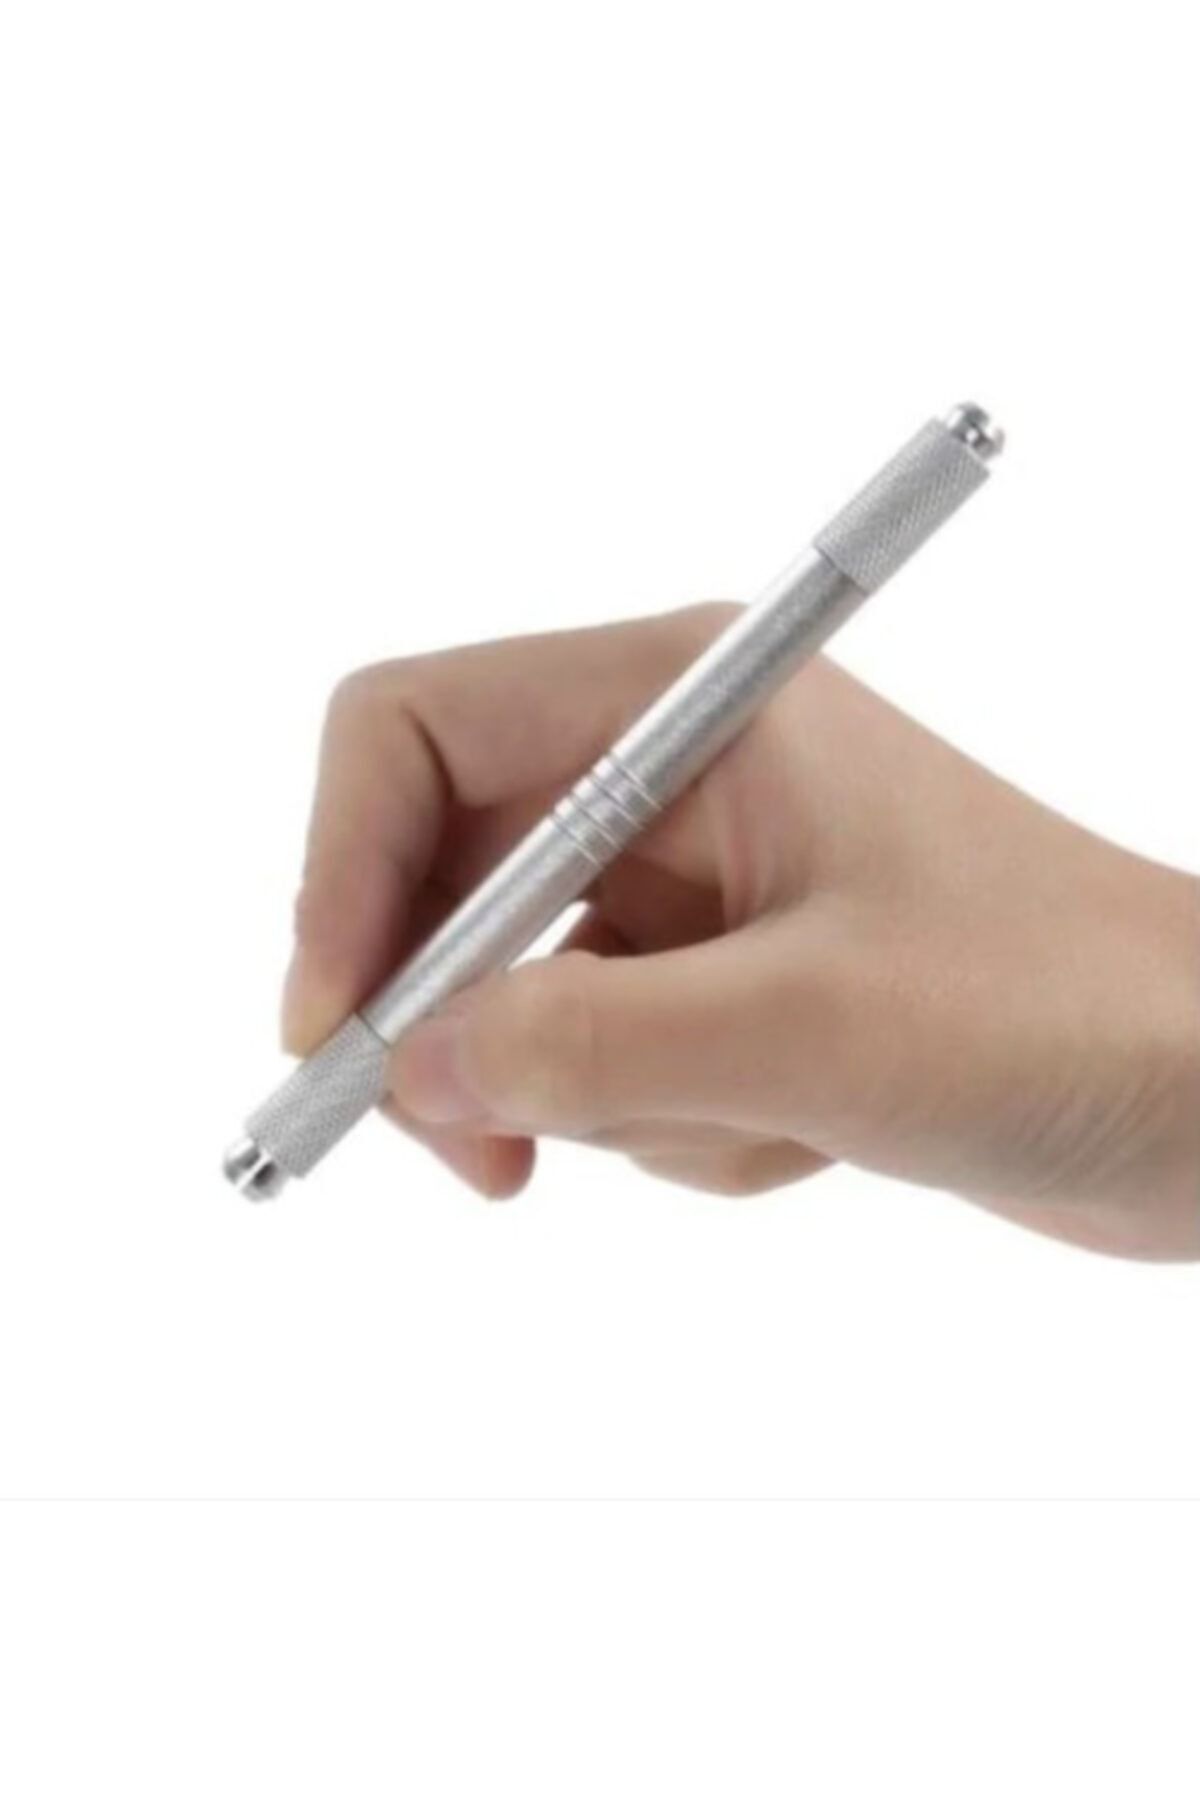 ARMONİKONYA Microblading Kalemi Çift Başlı Gümüş Renk Kalıcı Kaş Kalıcı Makyaj Kalemi